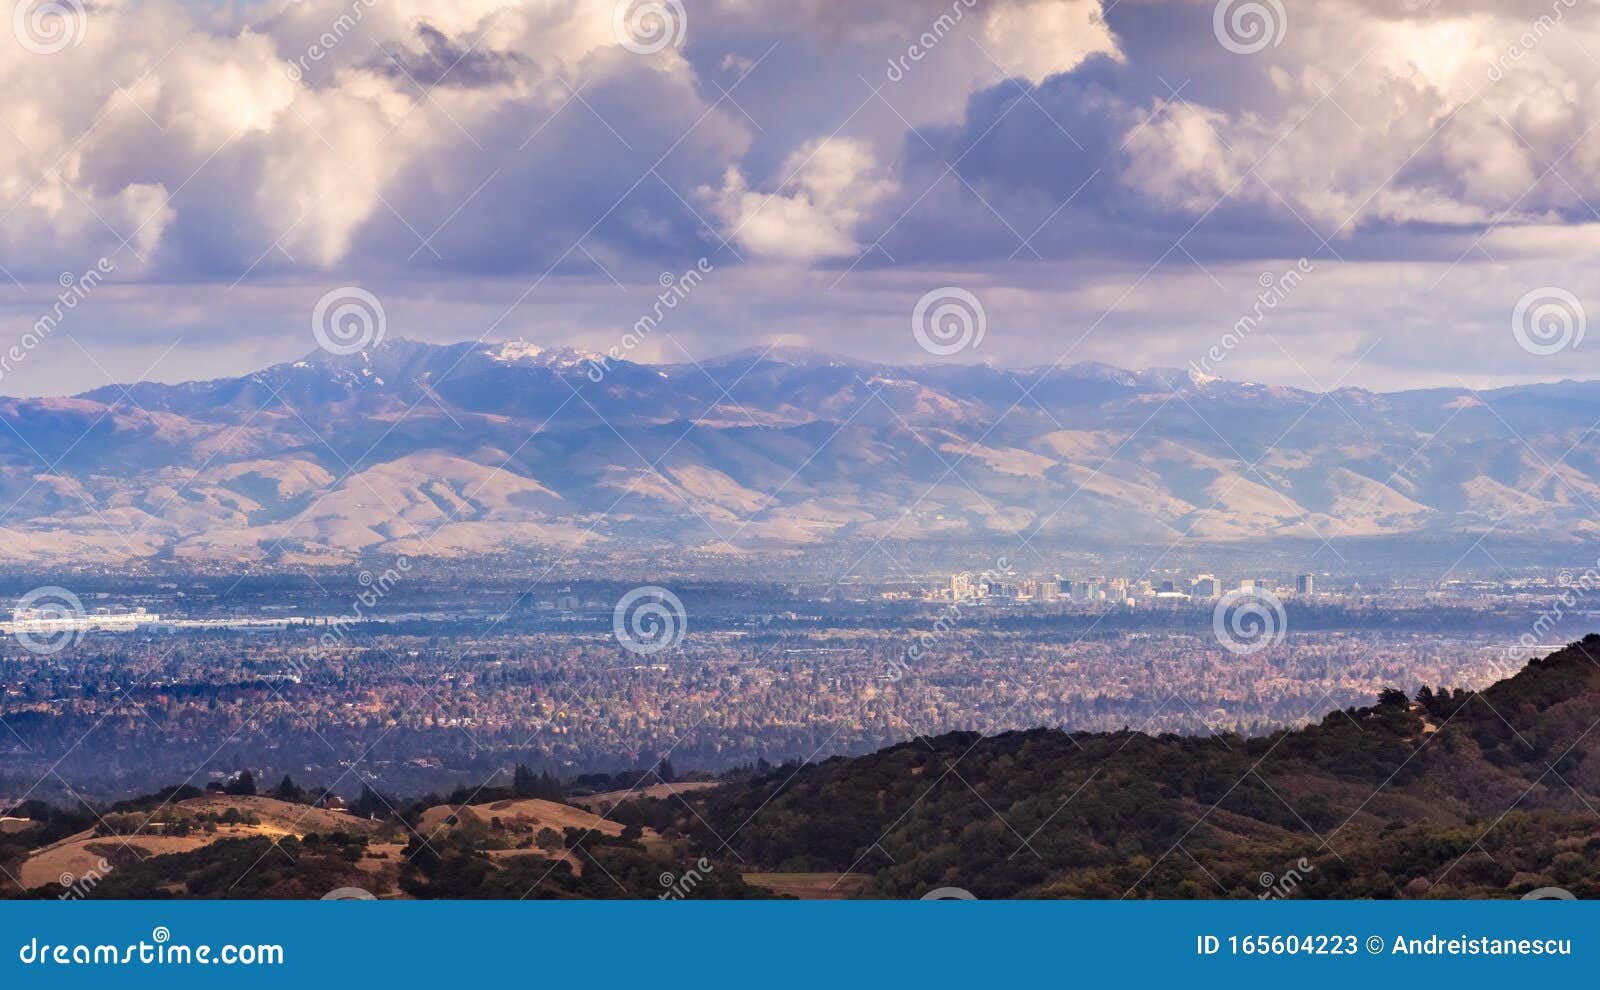 Santa Clara Valley by Mountain Dreams